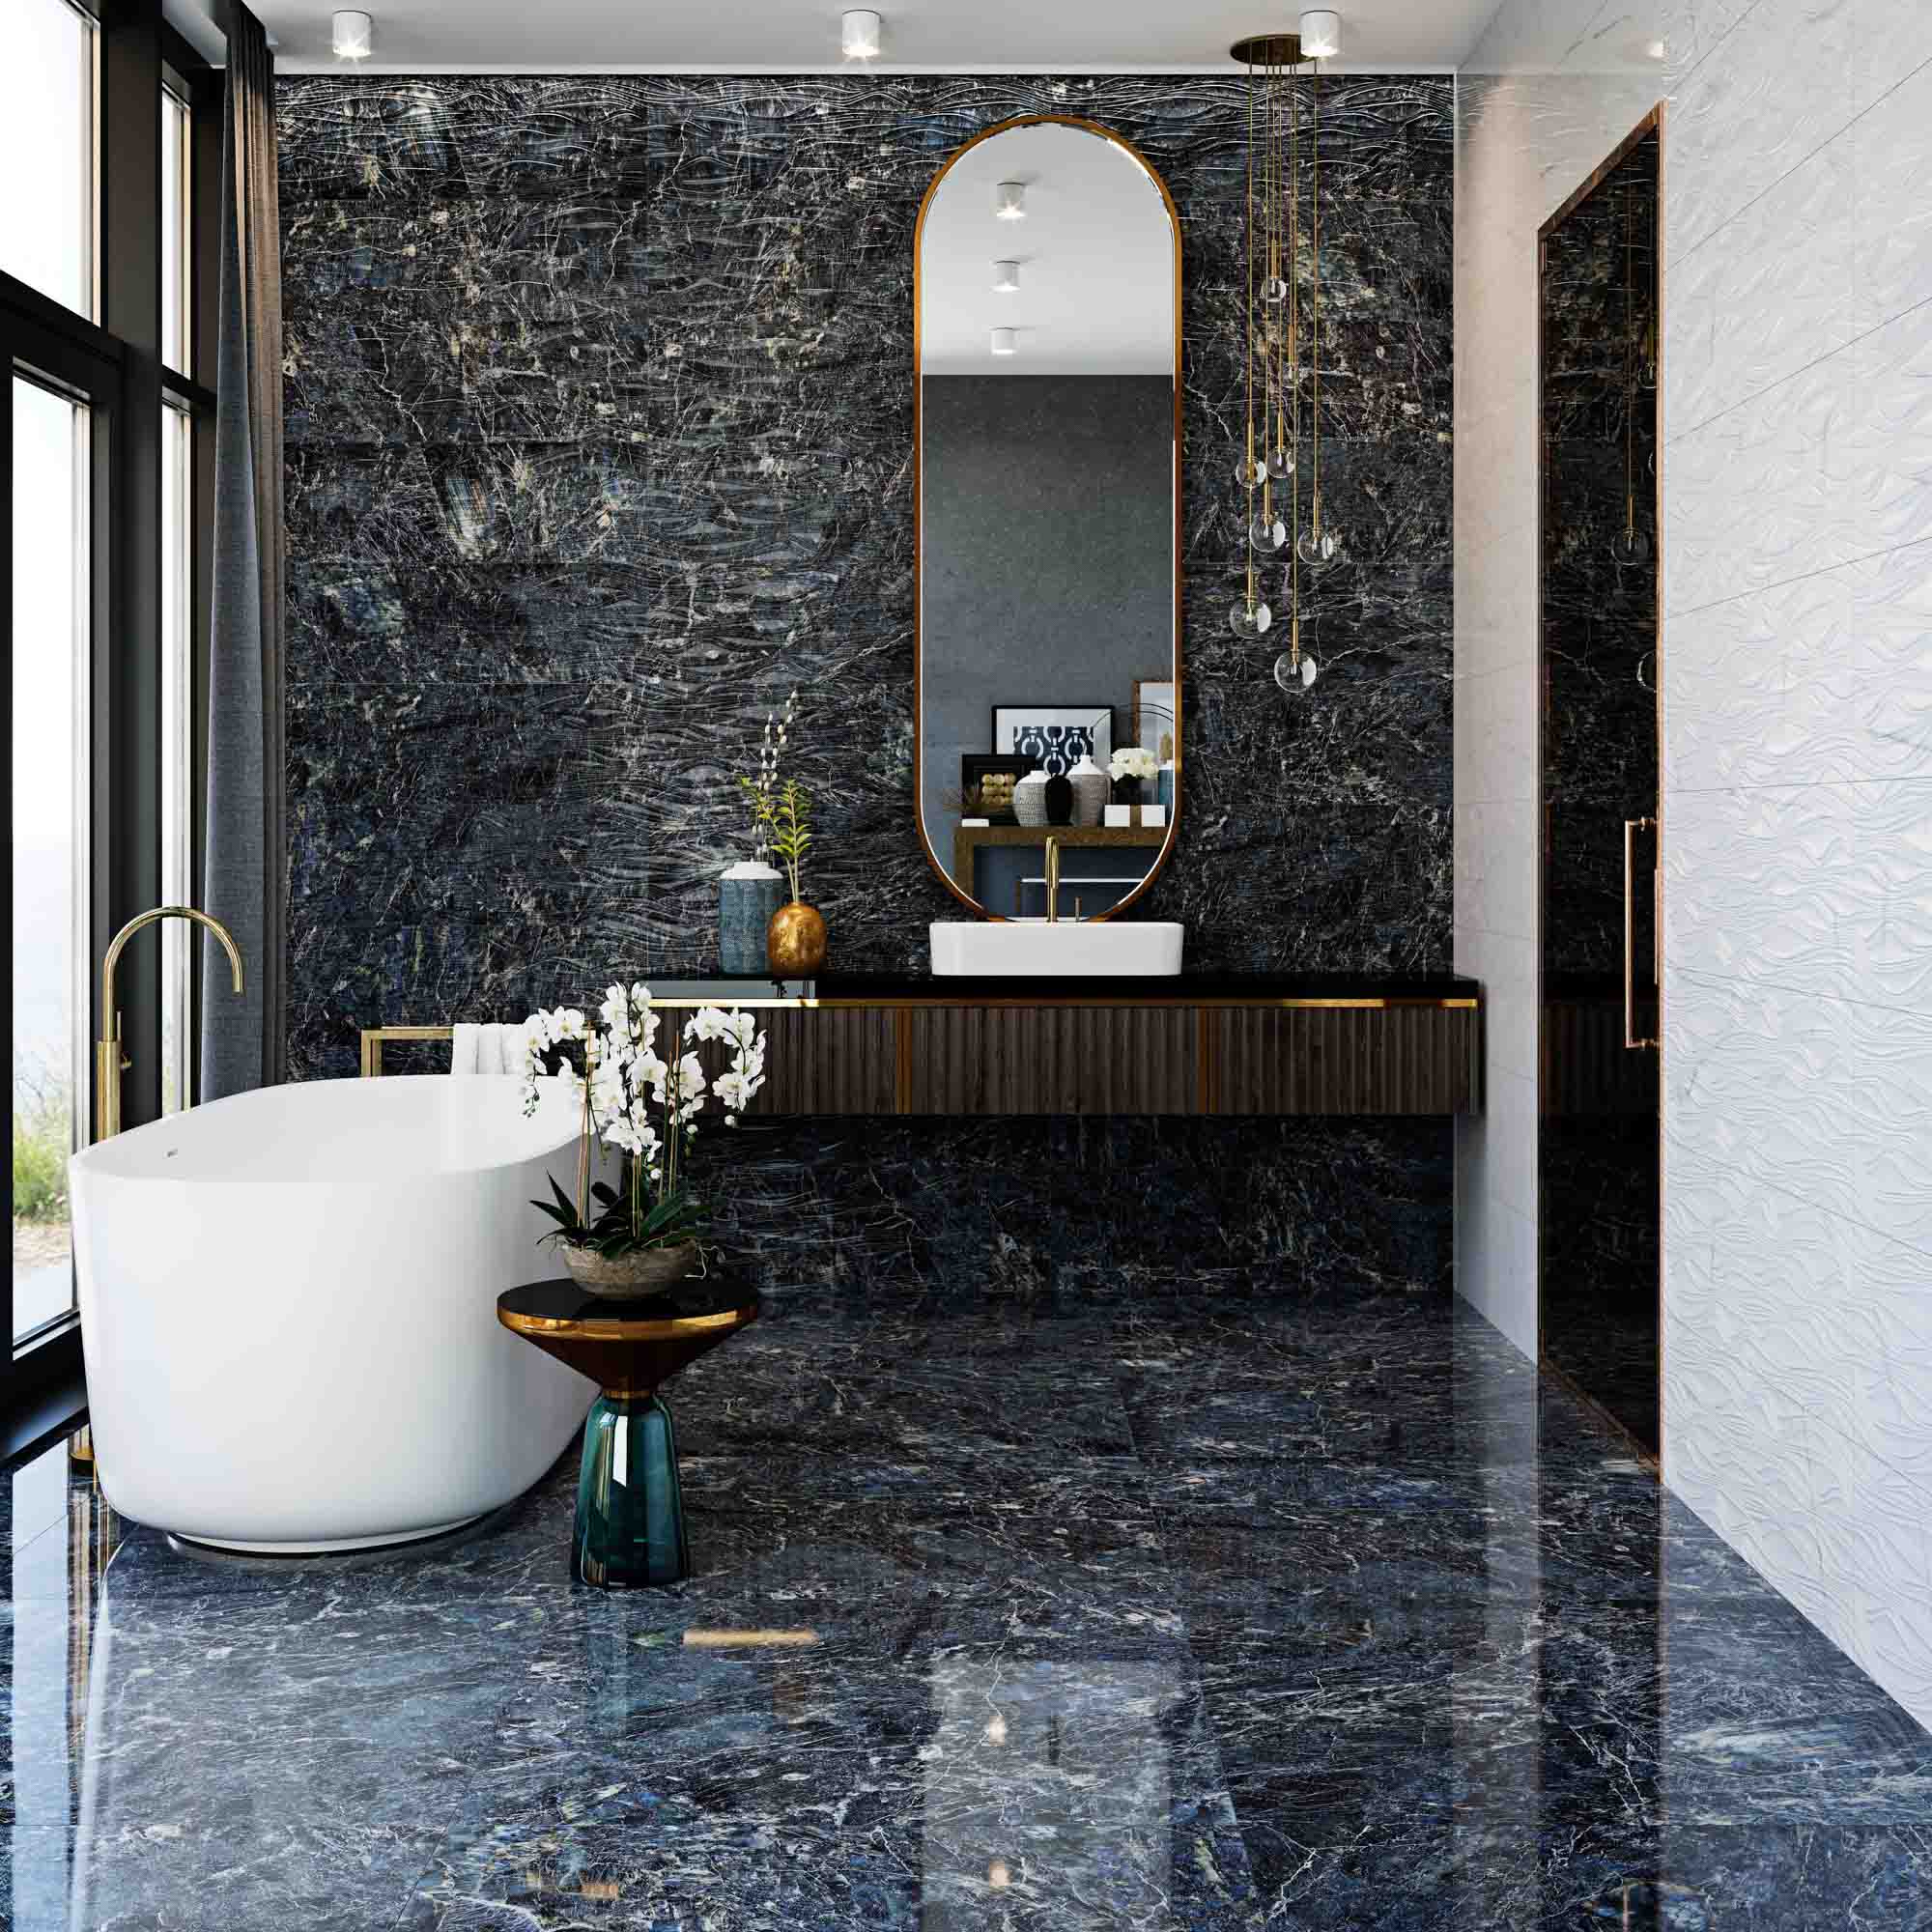 suelo y paredes baño antideslizante efecto mármol